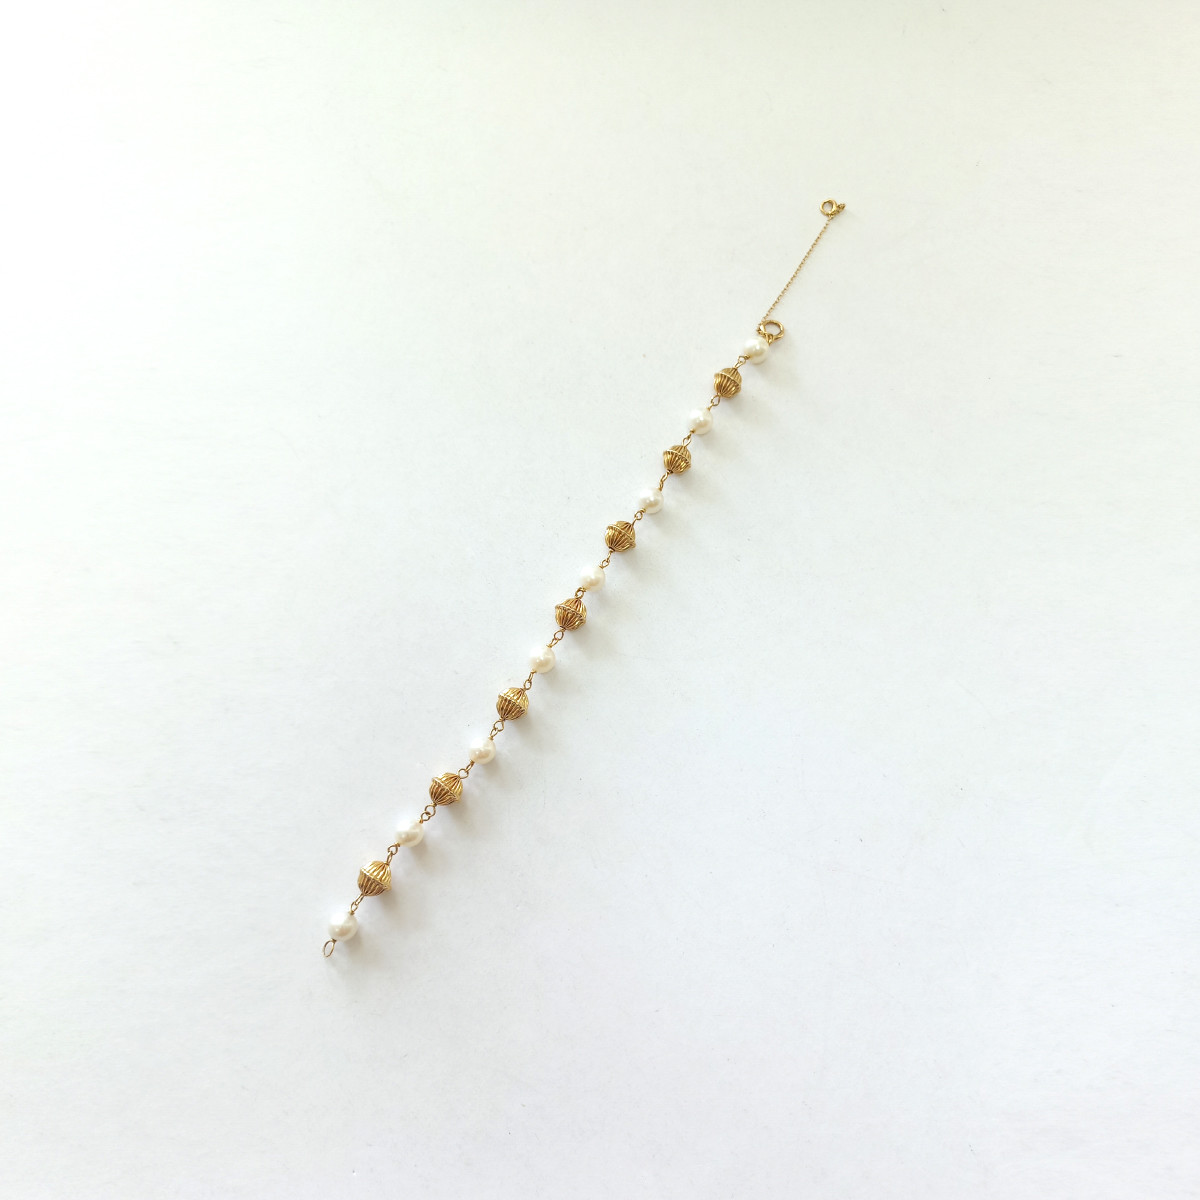 Bracelet d'occasion or 375 jaune perles de culture blanches - vue 2